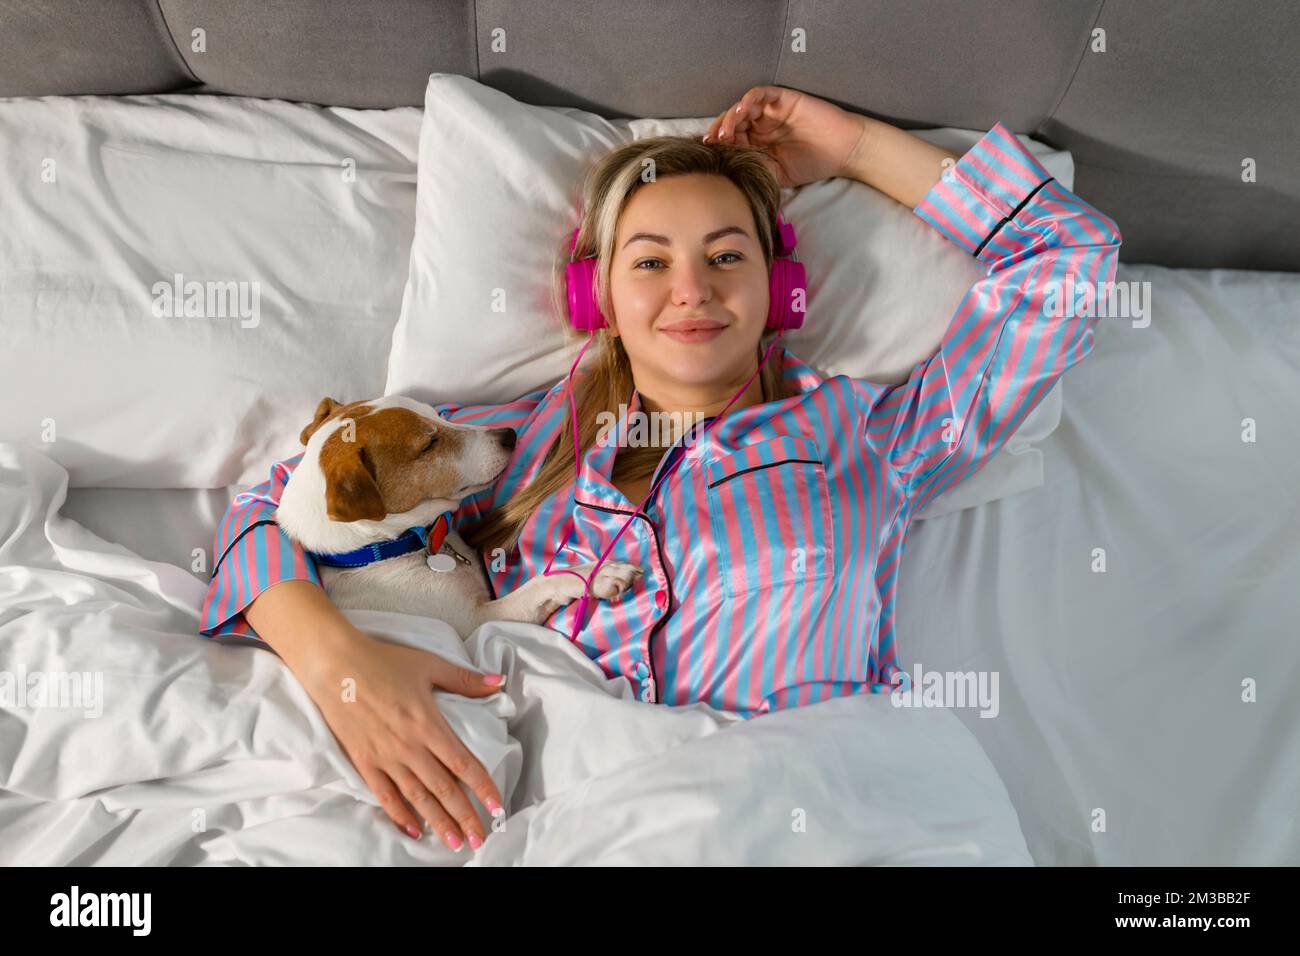 Eine sorgenfreie Frau im Pyjama, die Musik über Kopfhörer hört, während sie mit ihrem geliebten Haustier im Bett sitzt Stockfoto